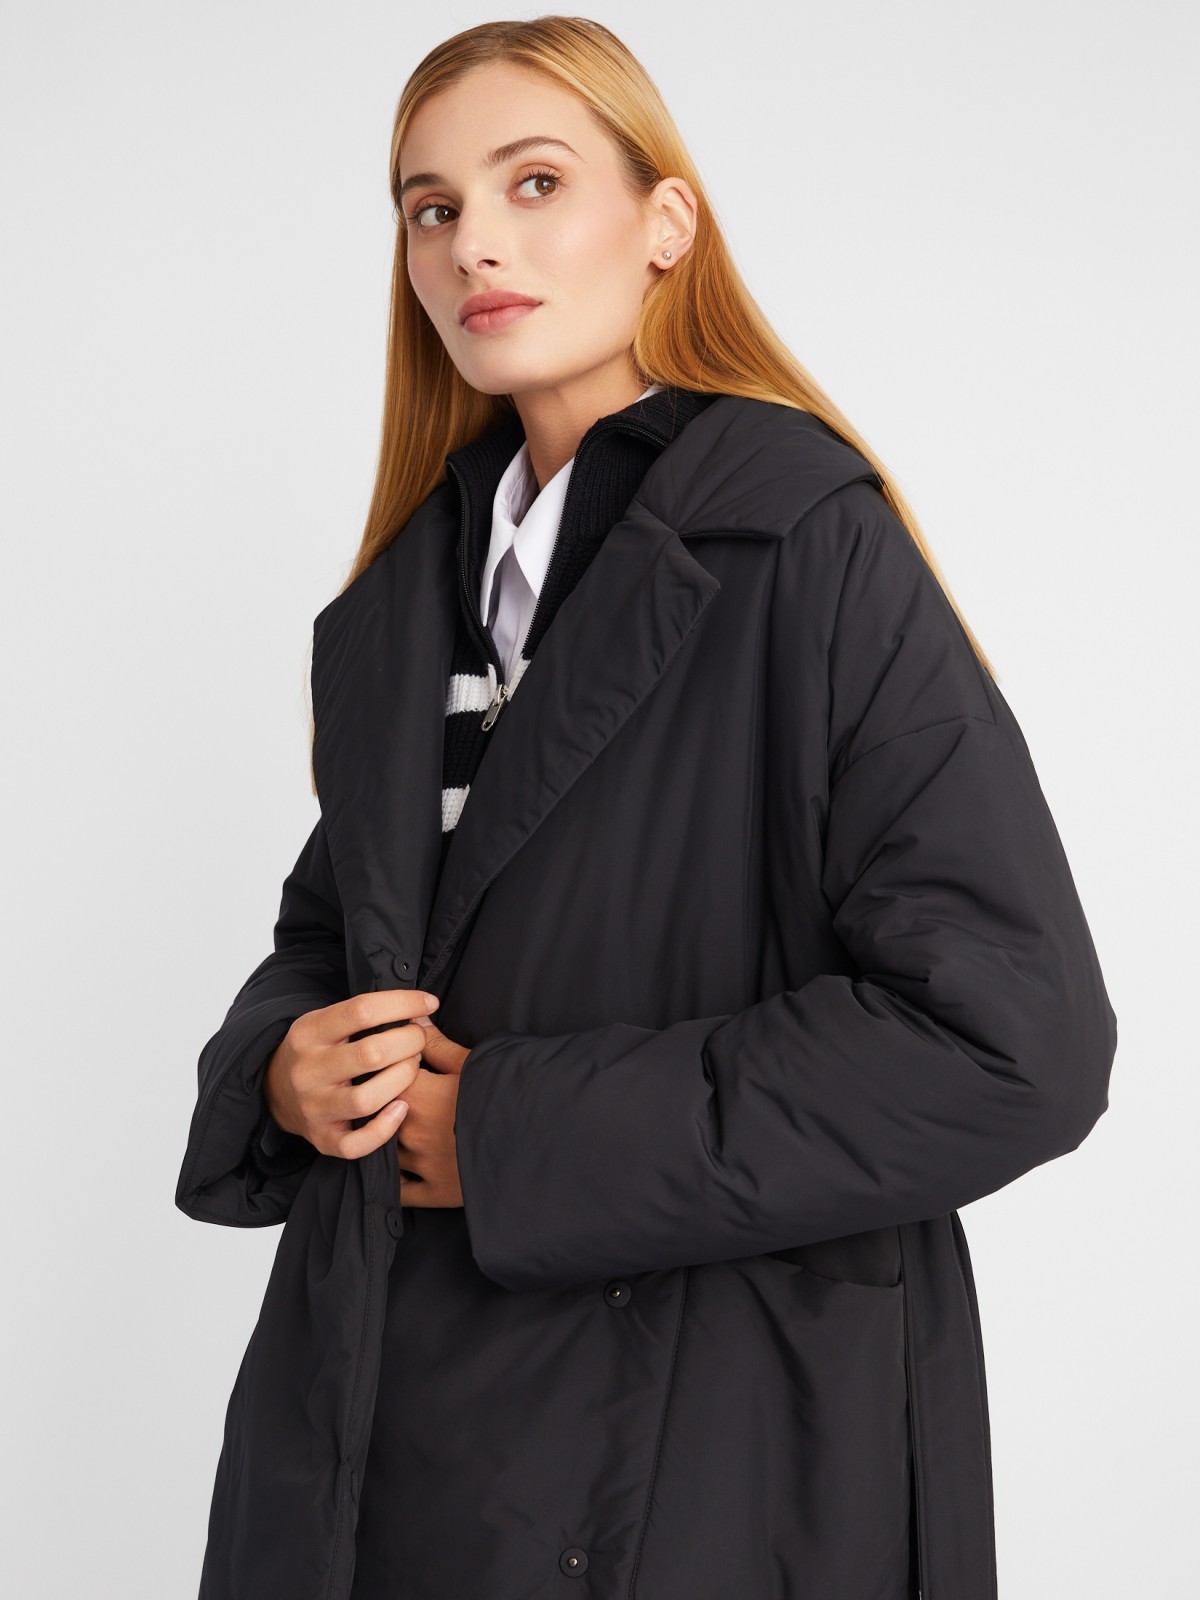 Тёплое пальто оверсайз силуэта на синтепоне с отложным воротником и поясом zolla 023335297244, цвет черный, размер L - фото 3